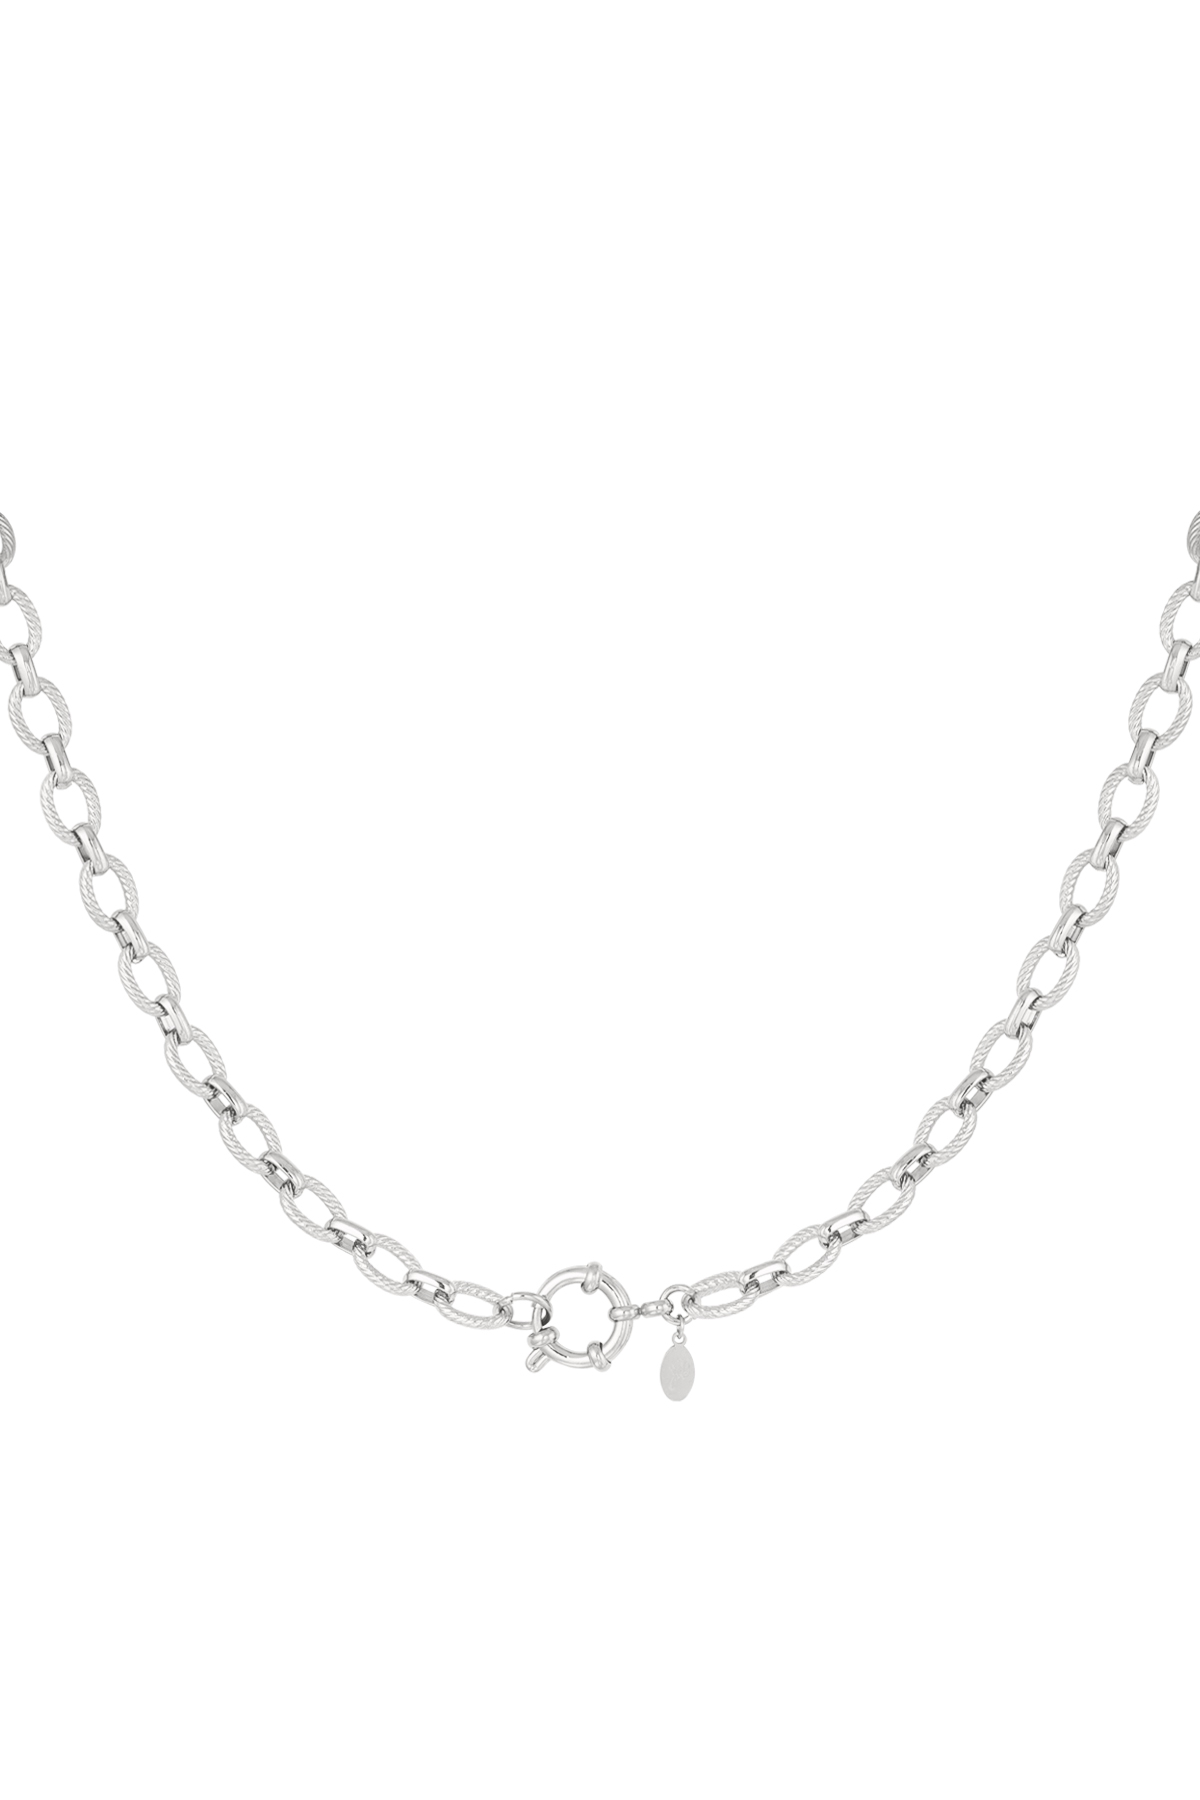 Halskette mit runden Gliedern – Silber